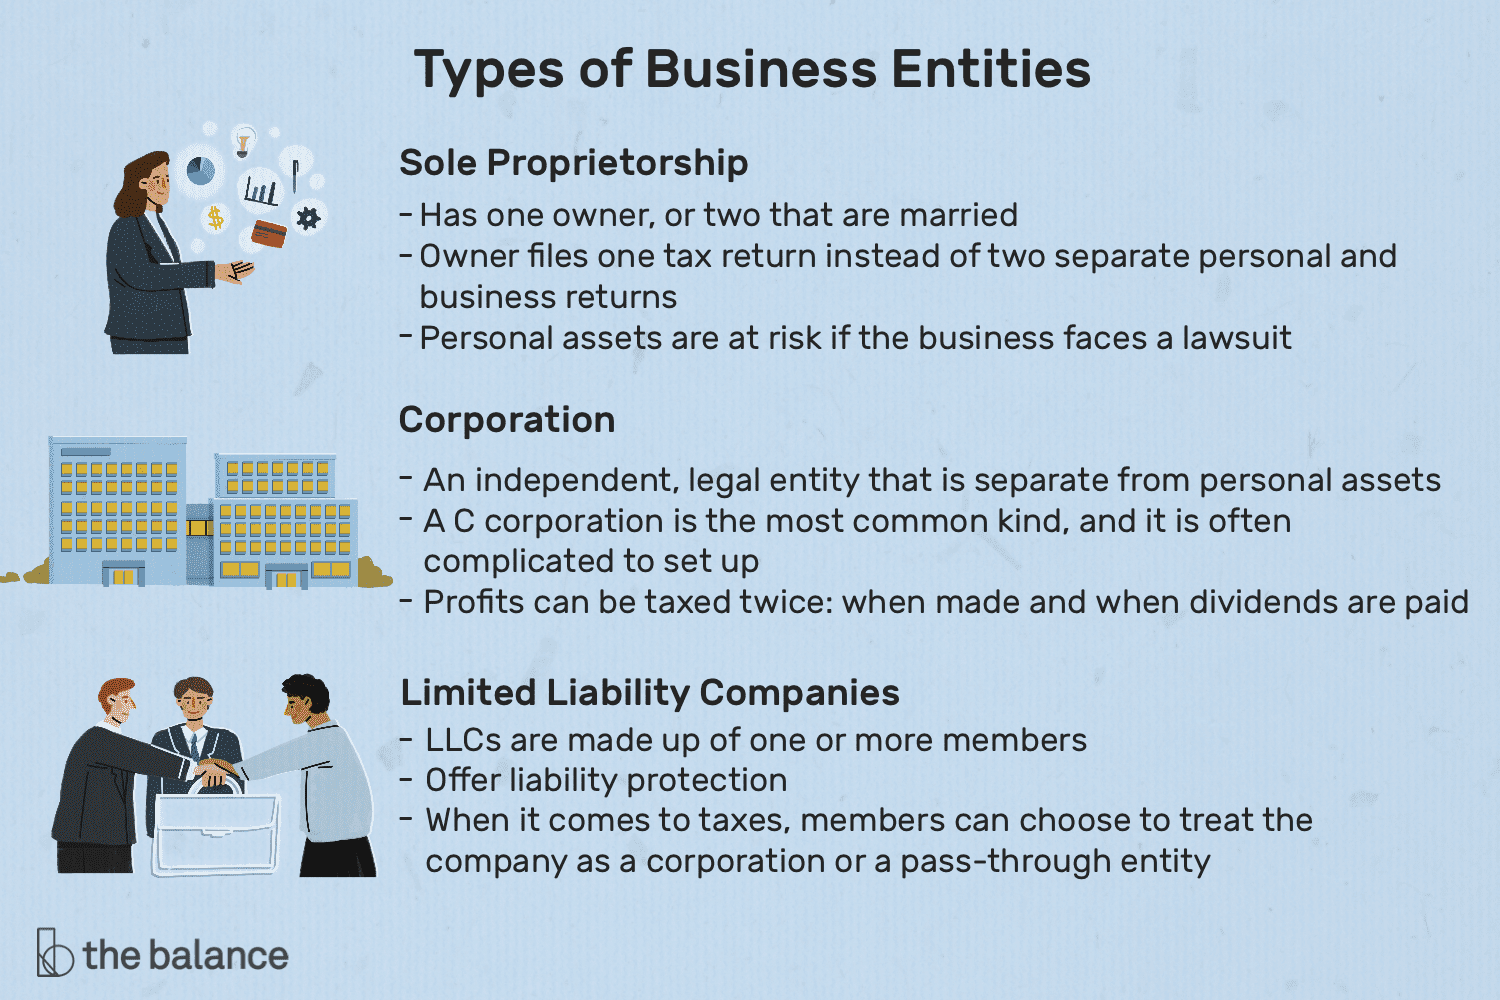 经营主体类型:独资企业、股份有限公司、有限责任公司